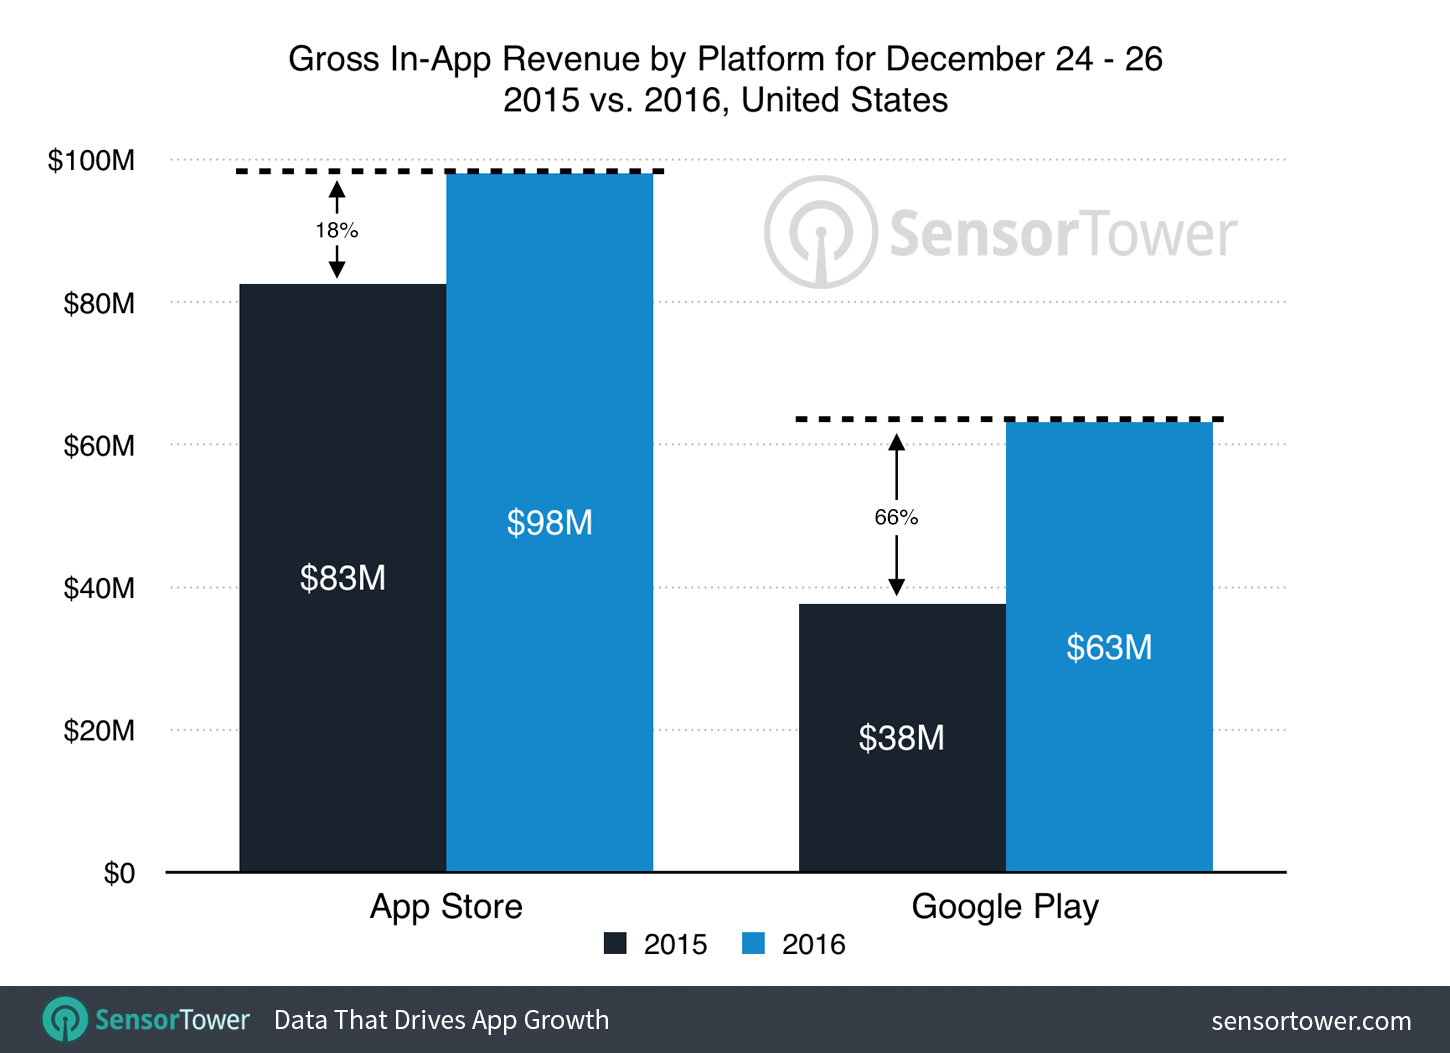 Holiday 2016 vs. 2015 App Revenue by Platform